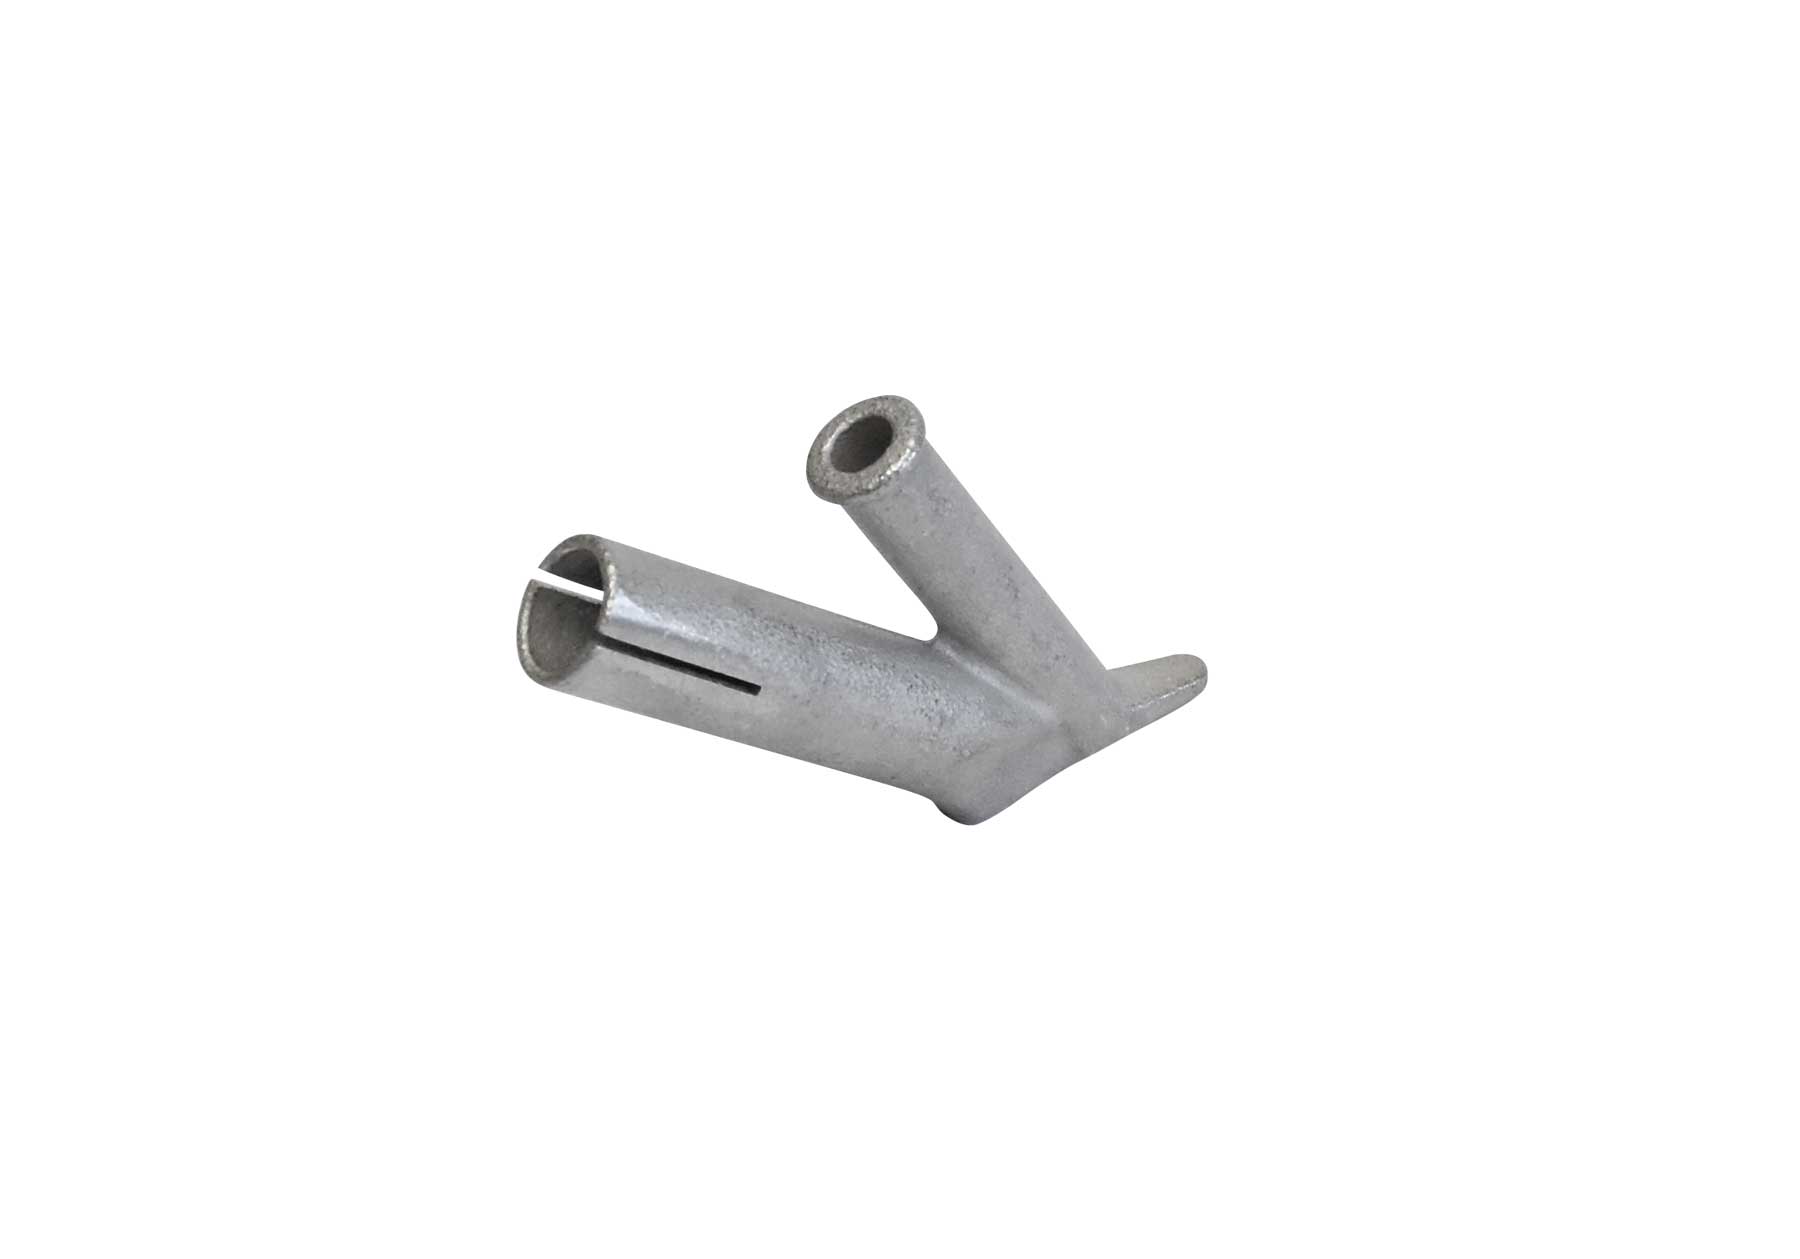 Edelstahl-Schweißschuh / Stainless steel welding element for 10 mm round nozzle